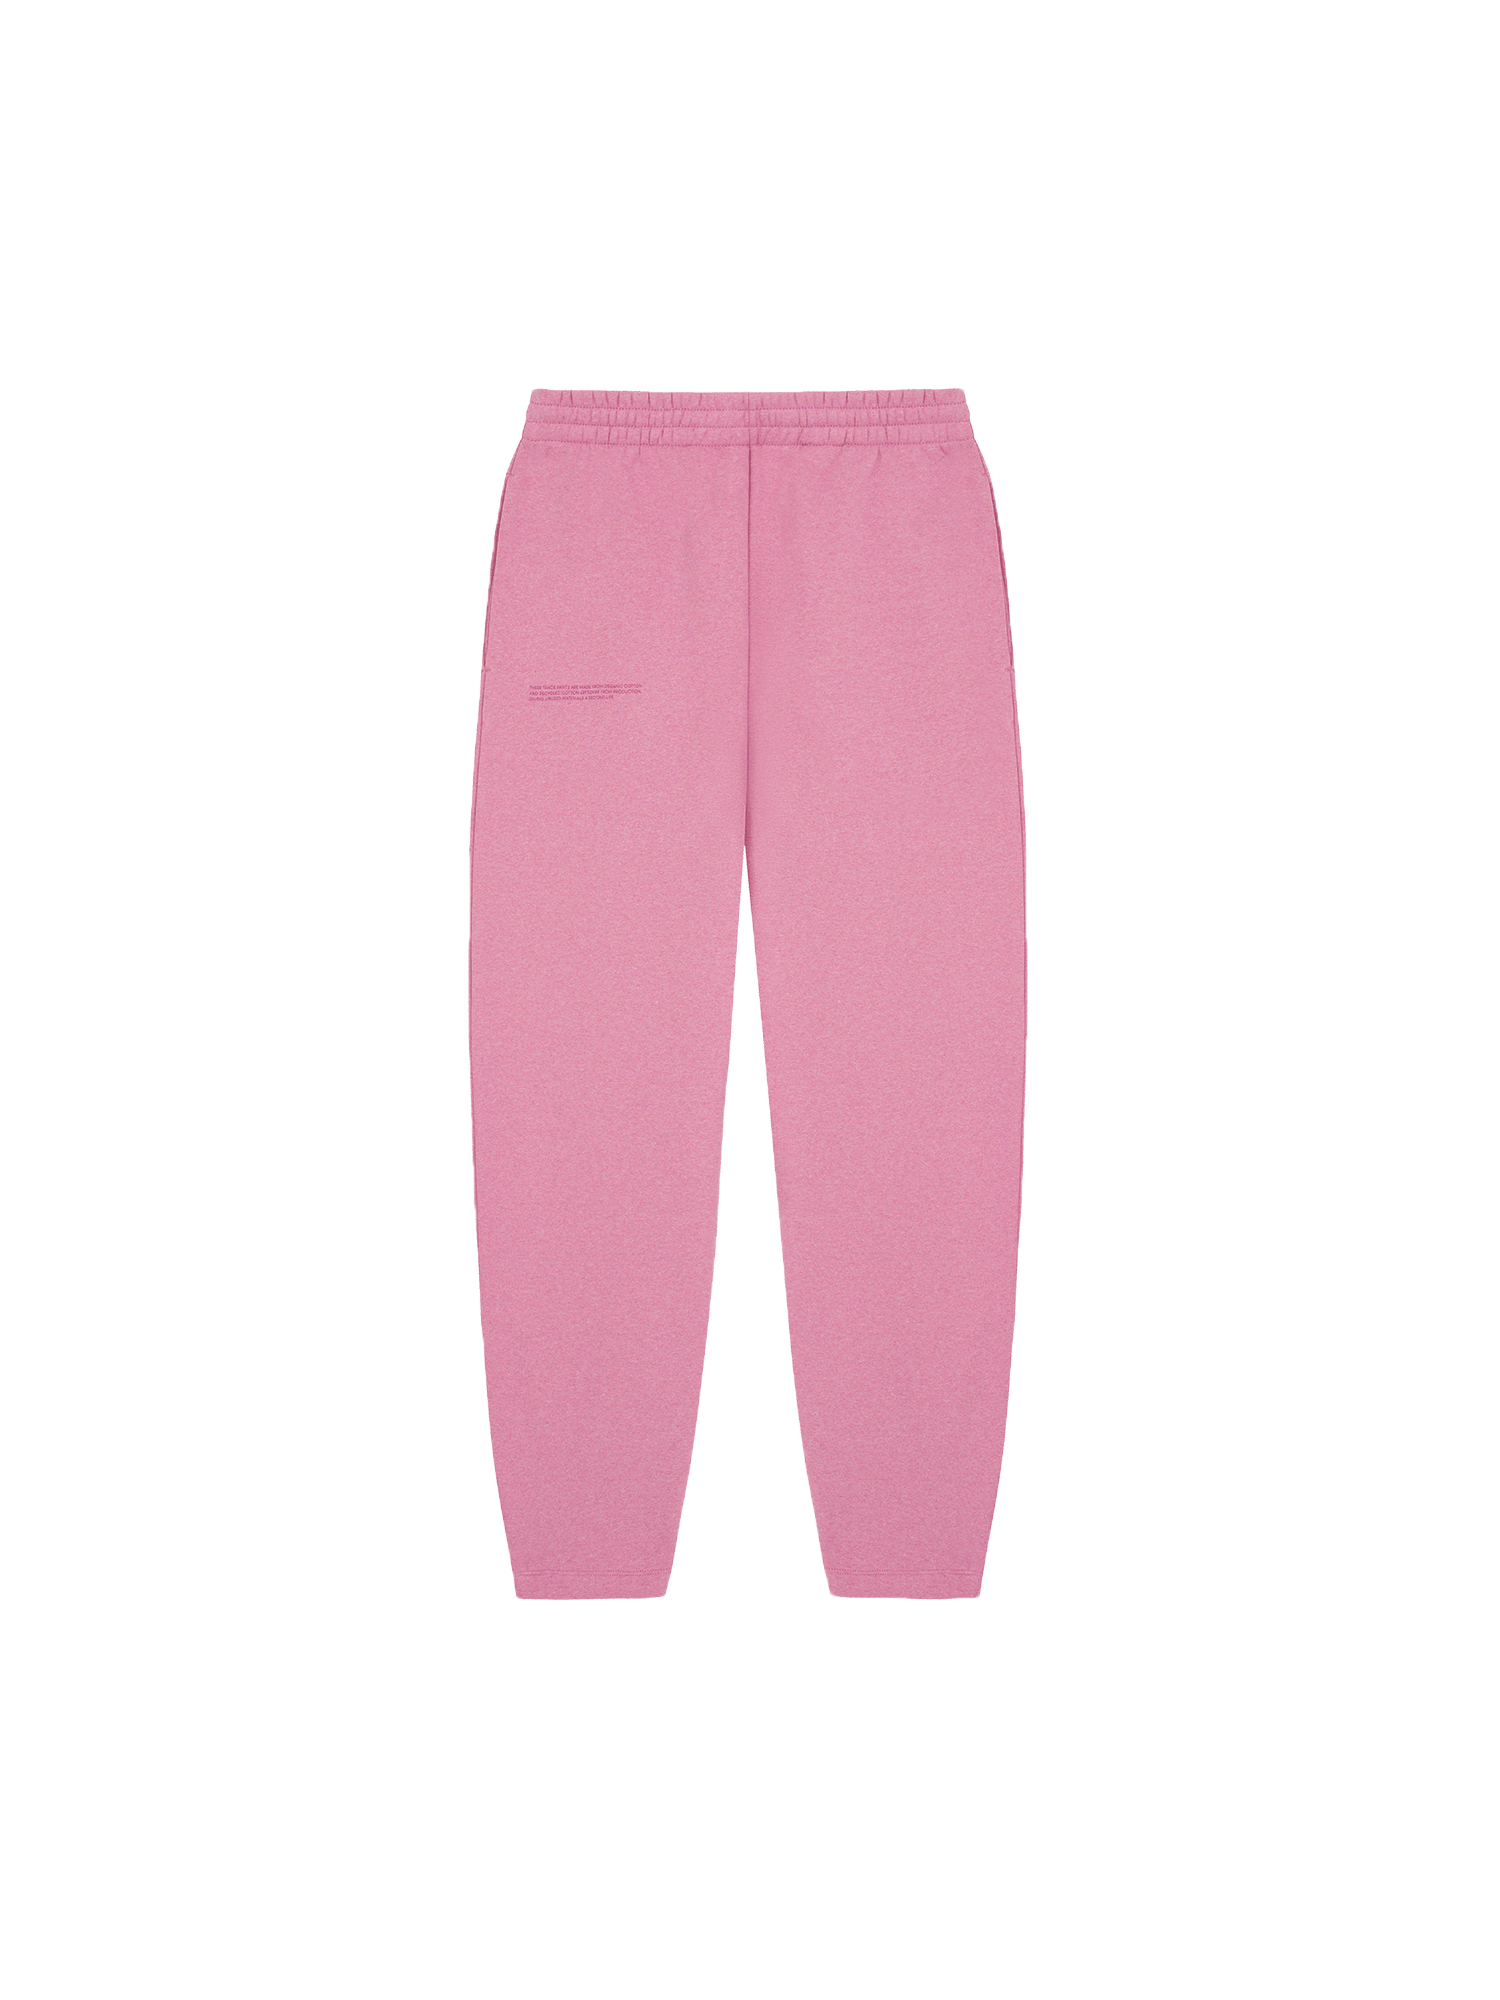 365 Midweight Track Pants—sakura pink